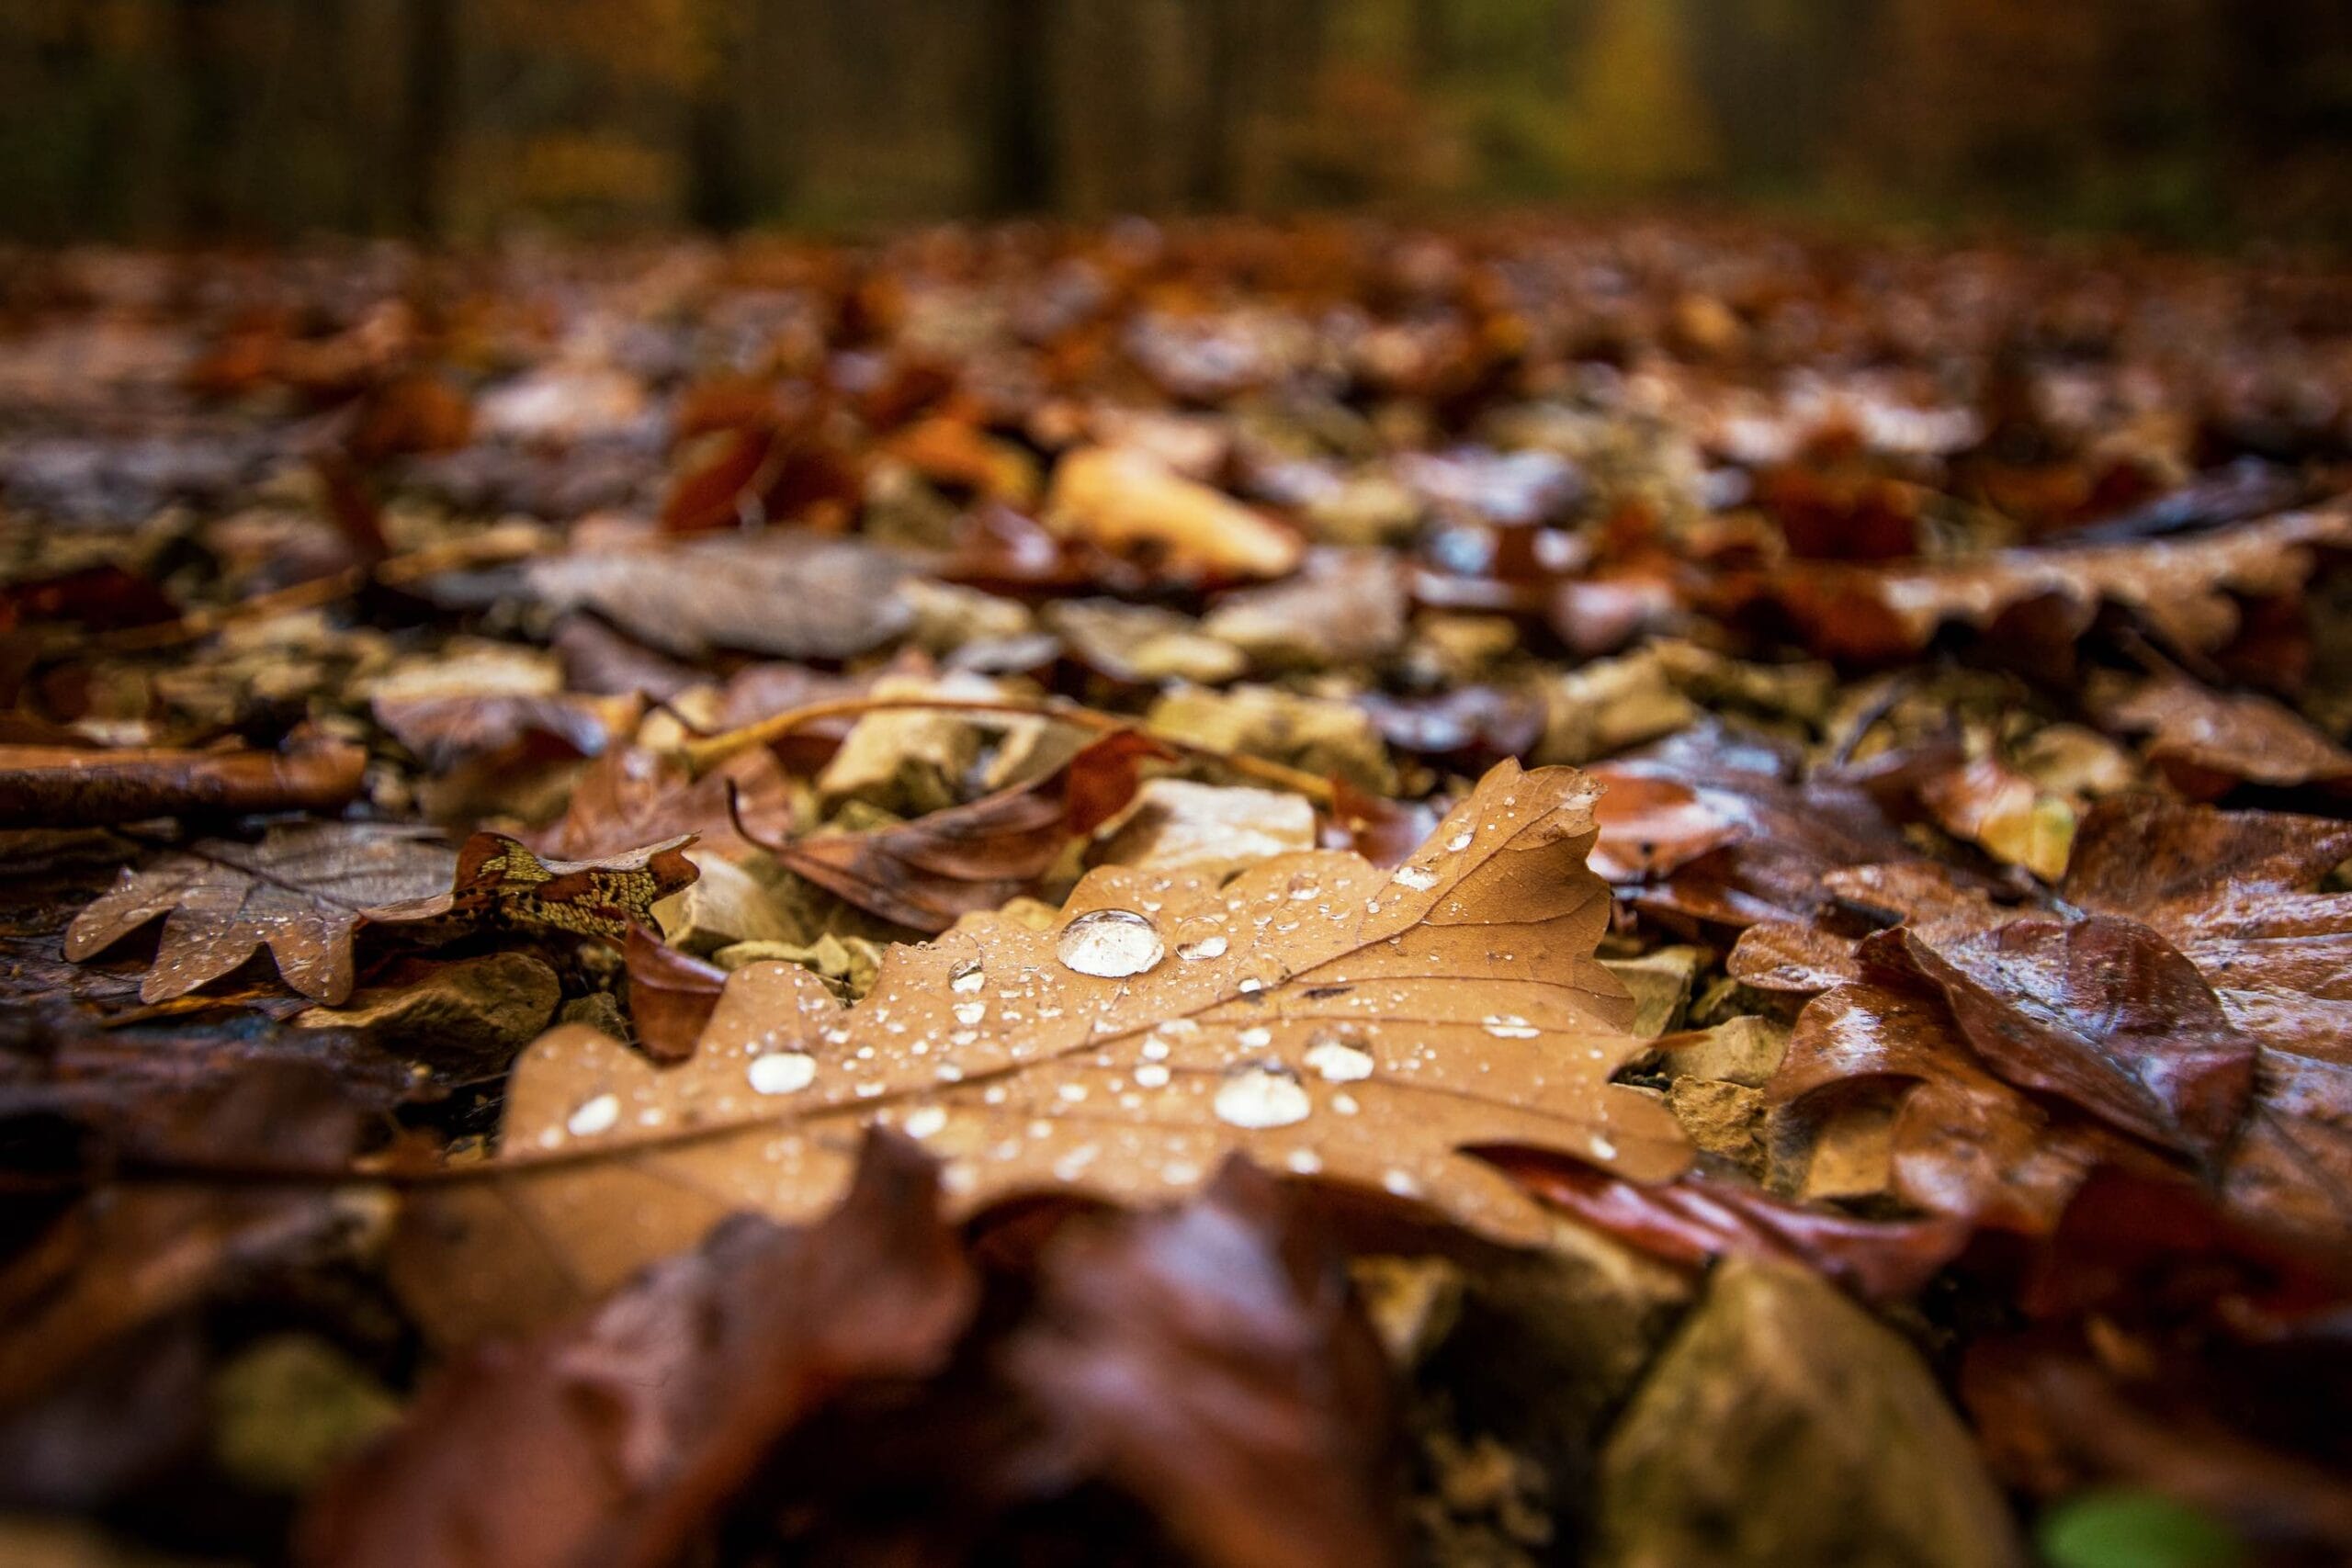 Herbst Regen liefern schöne Fotoideen - Foto: Oliver Hihn/unsplash